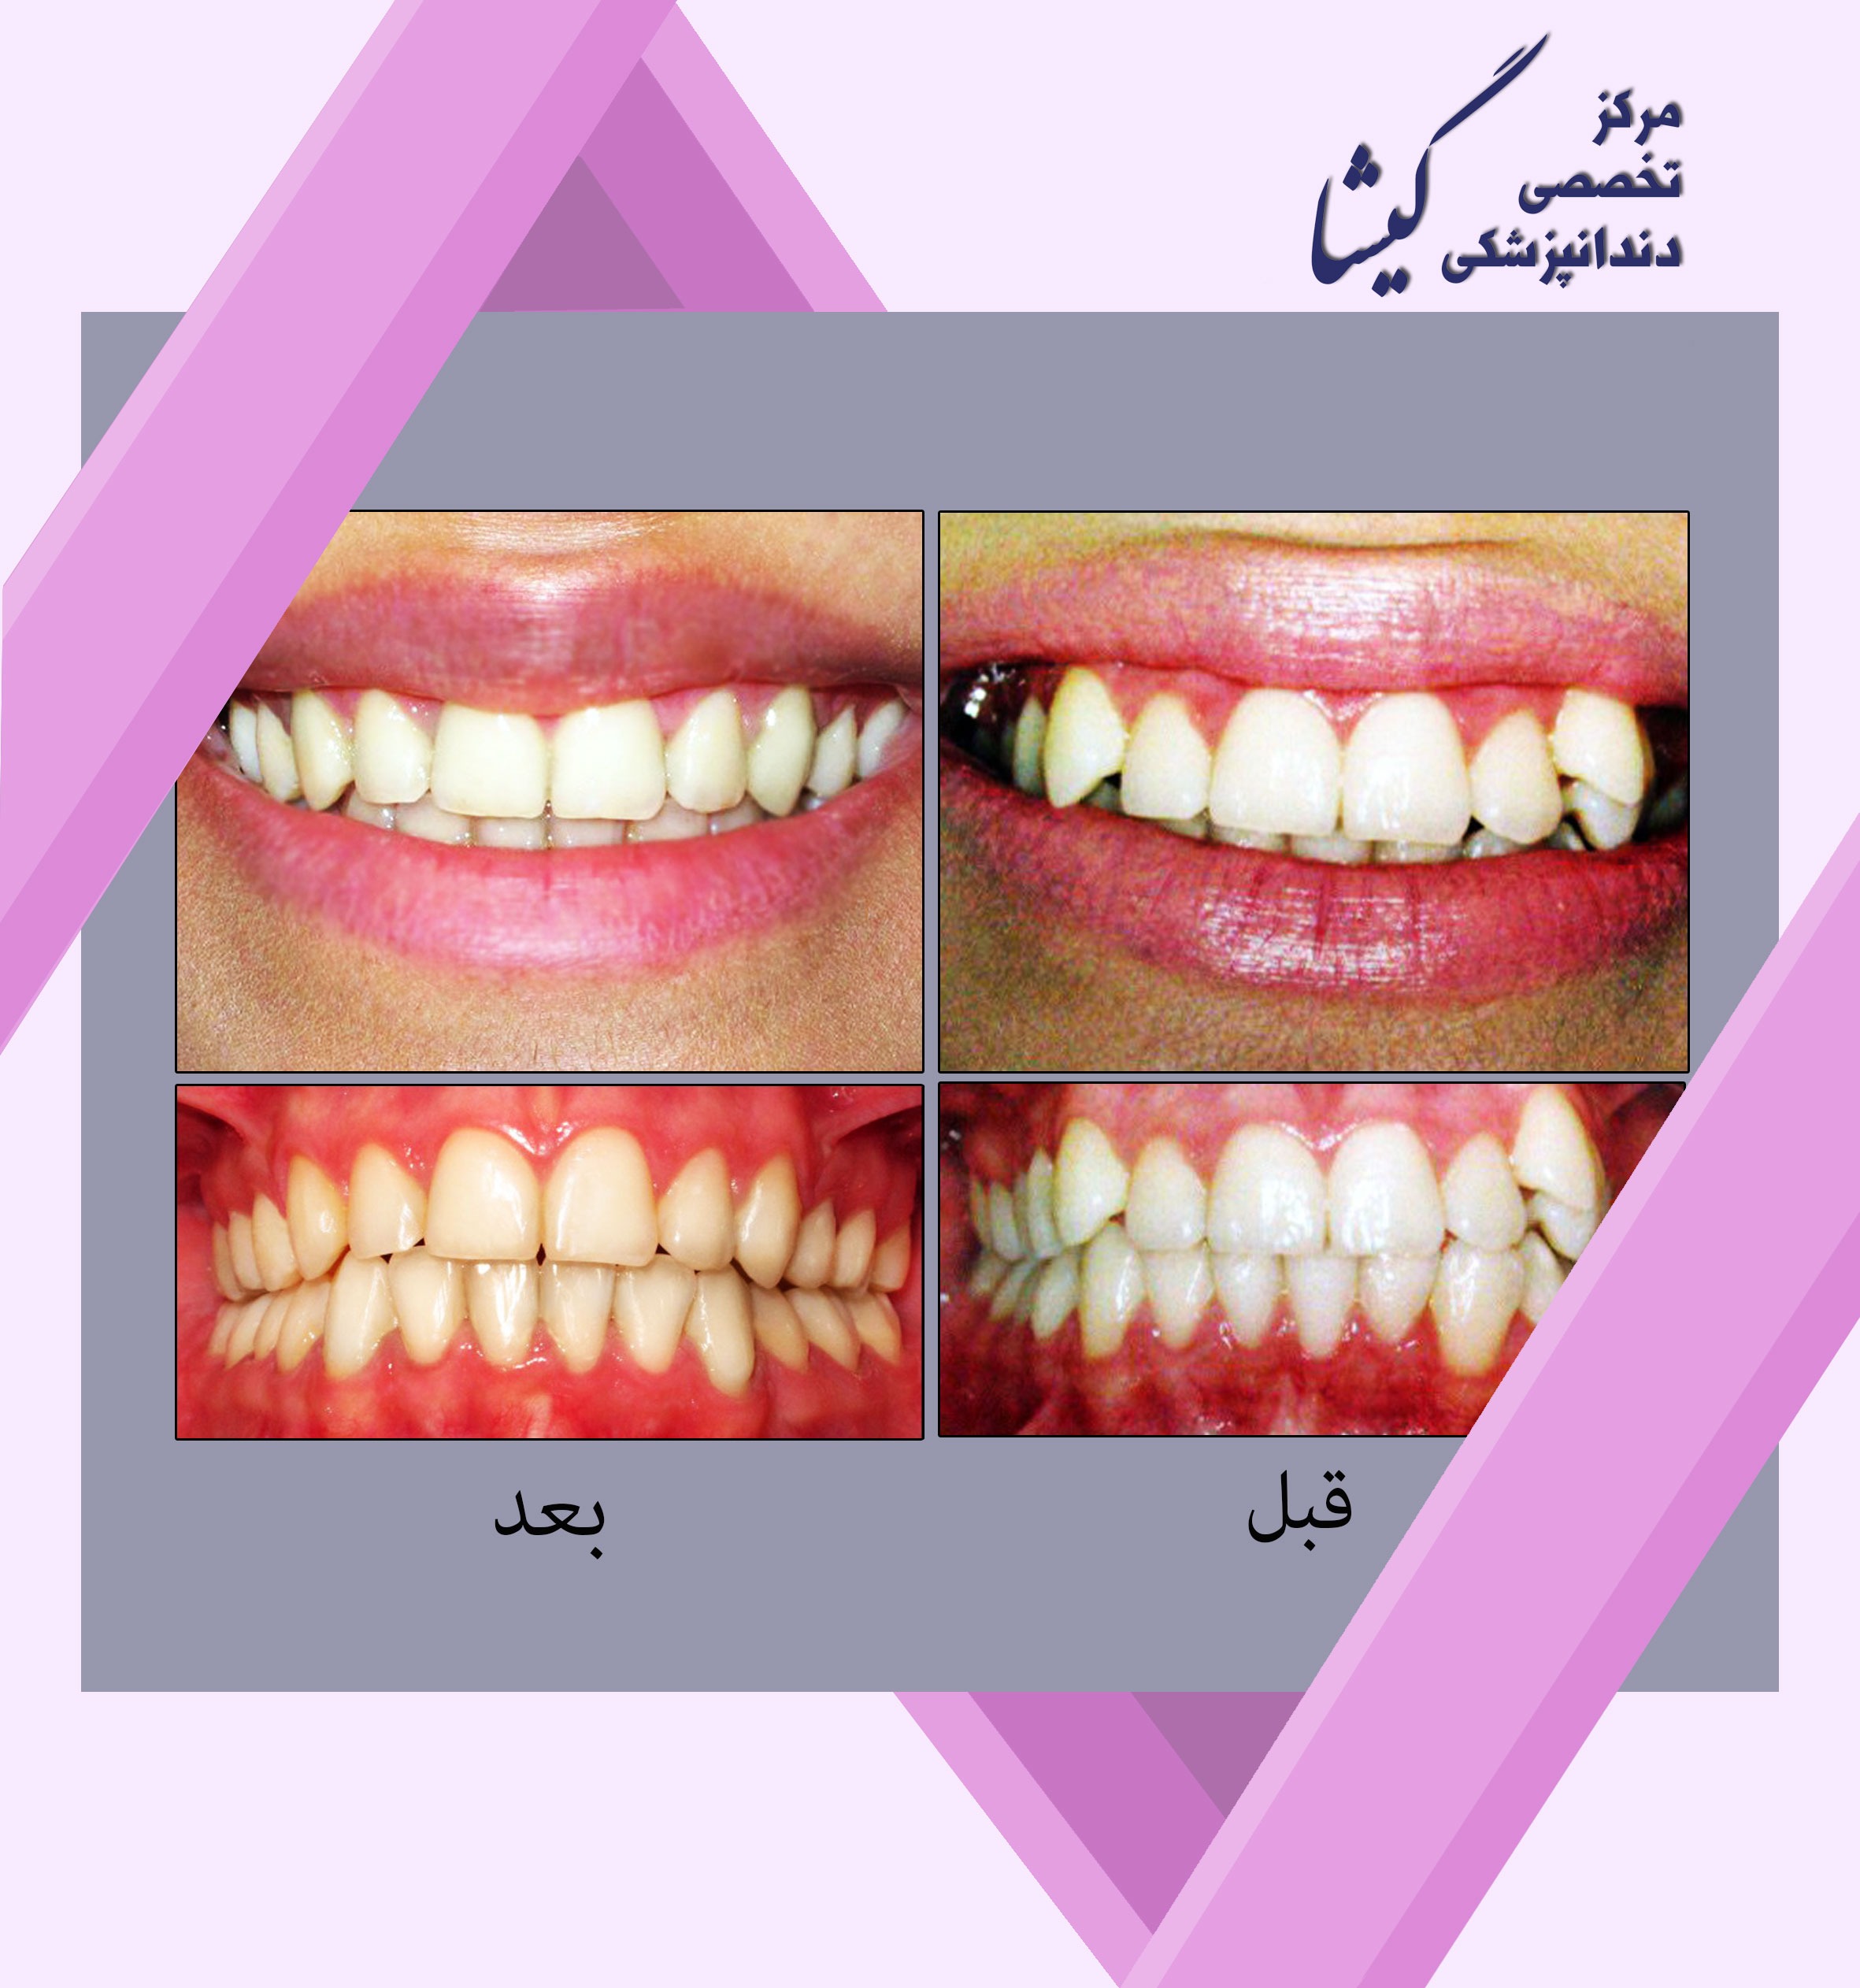 بيمار درمان شده با بيرون زدگي شديد دندانهاي نيش و دستيابي به جفت شدن (اكلوژن ) ايده آل دندانها و لبخندي جذاب!